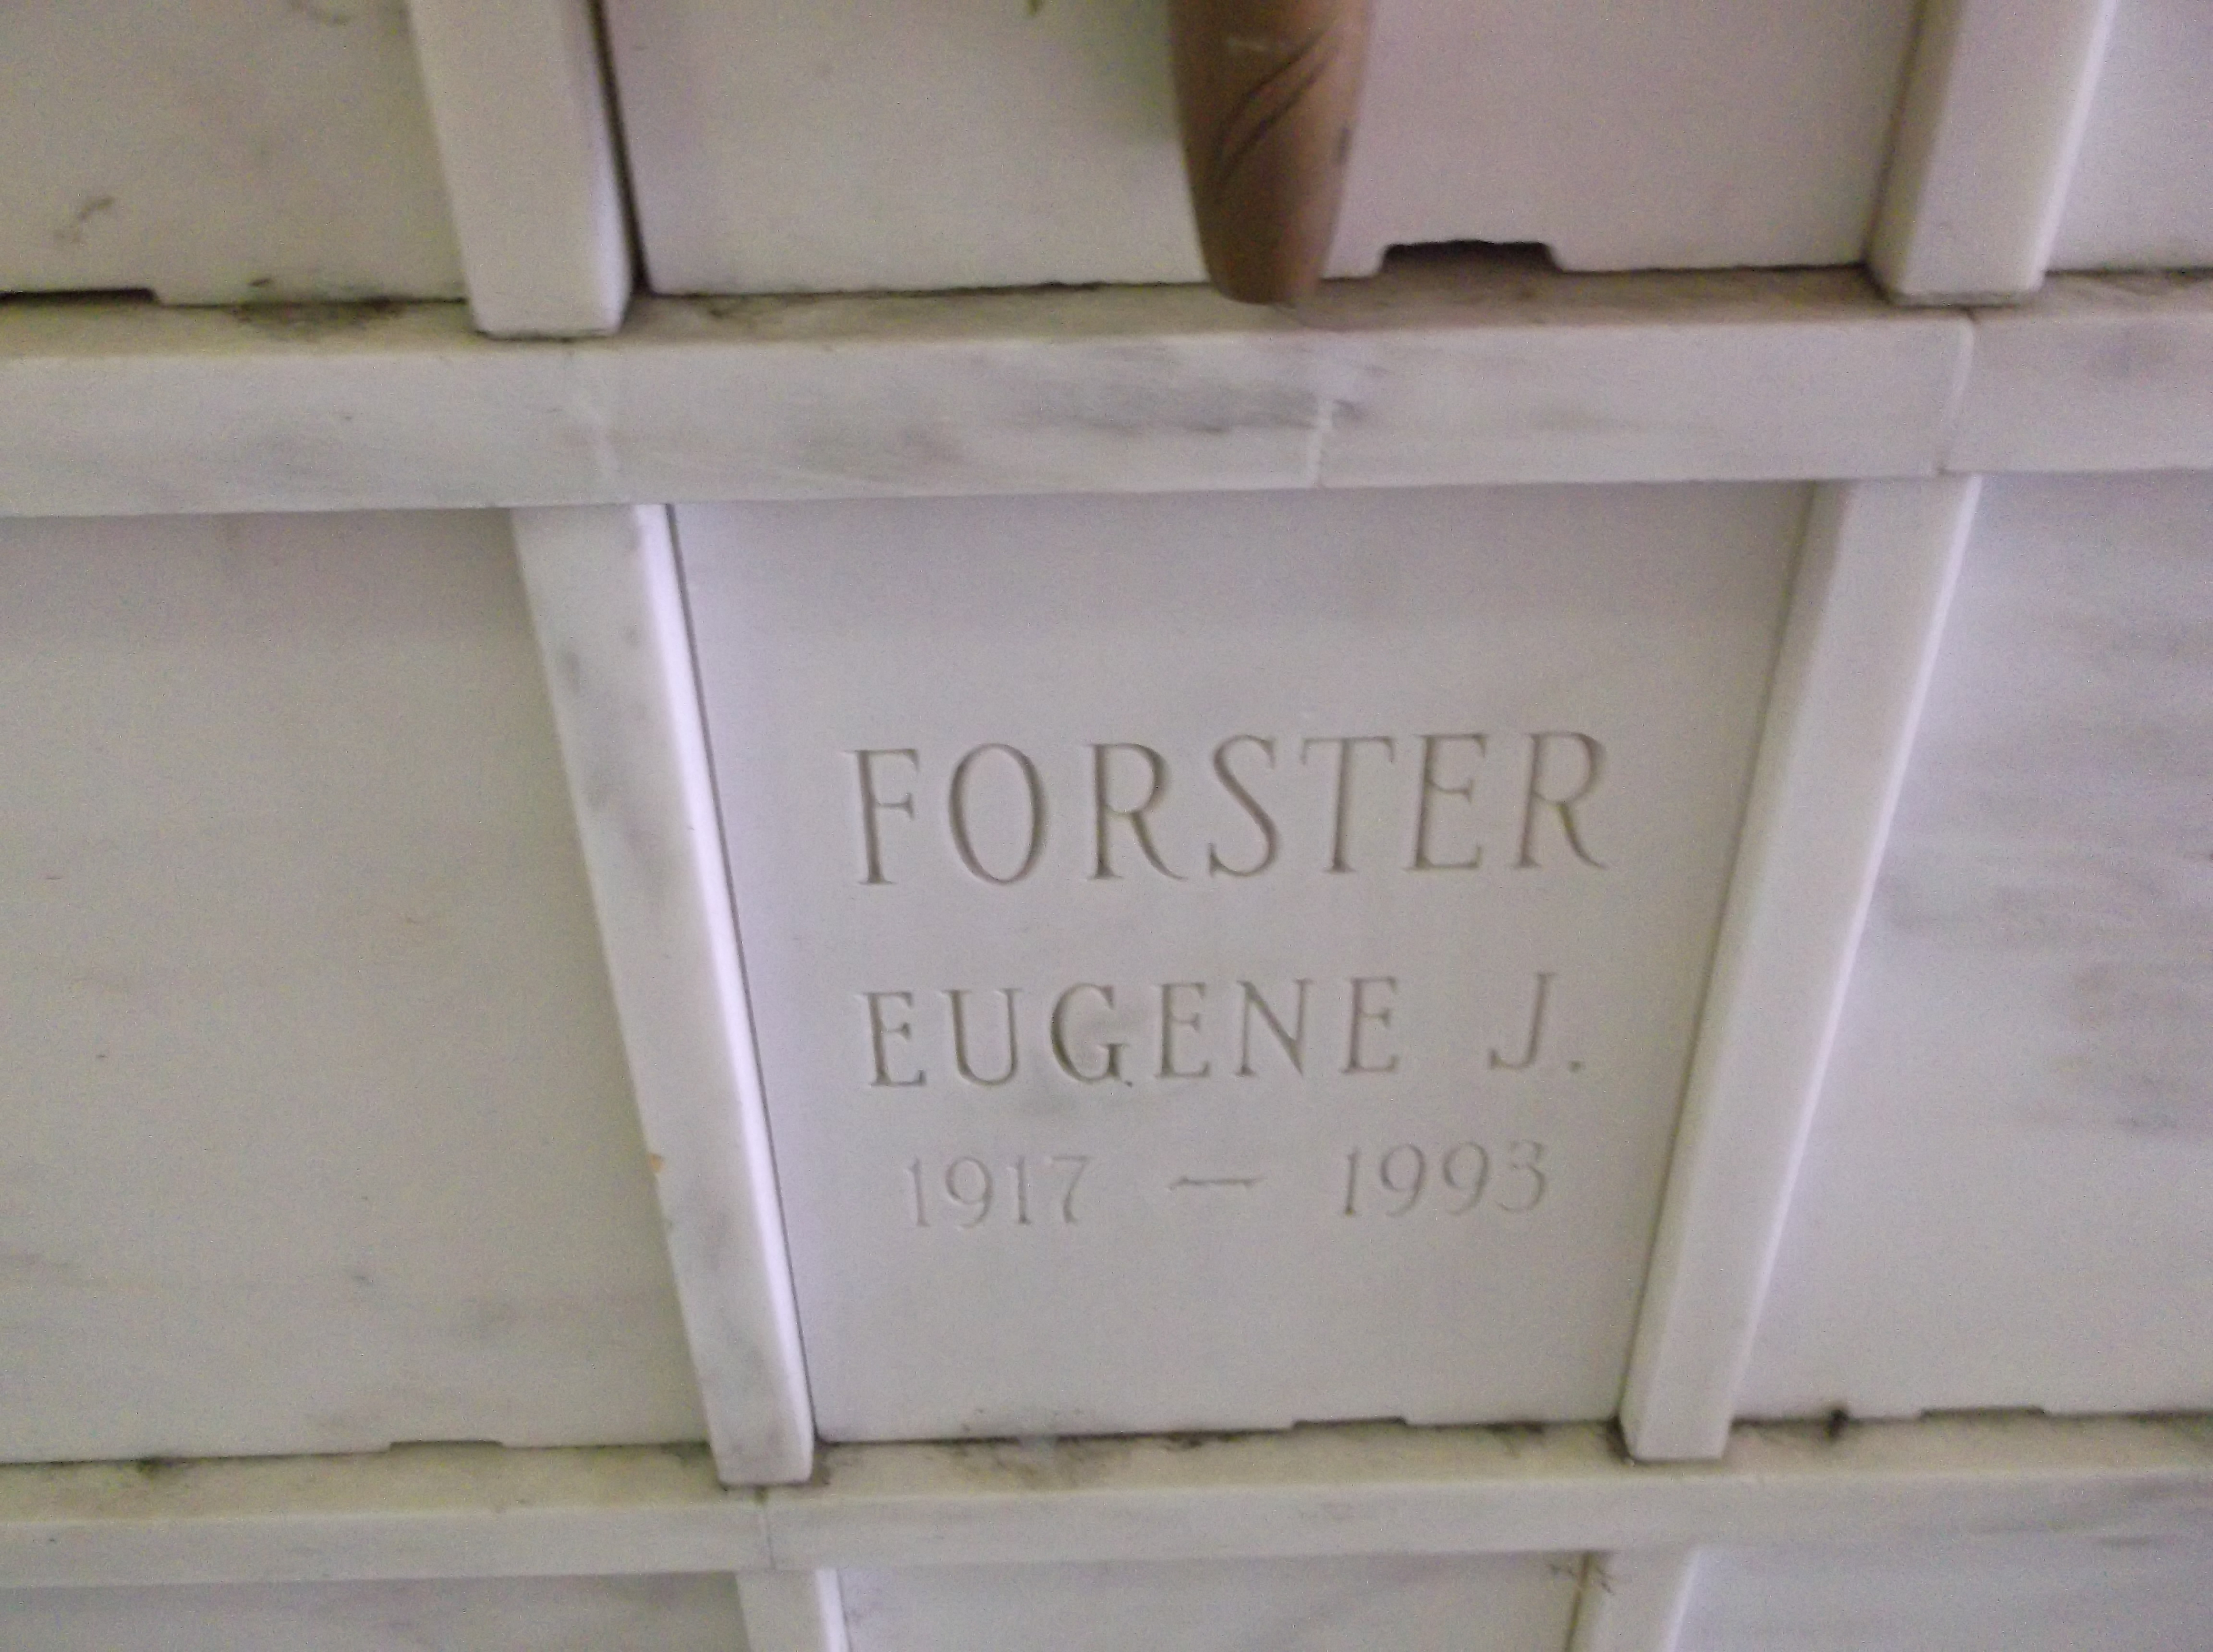 Eugene J Forster